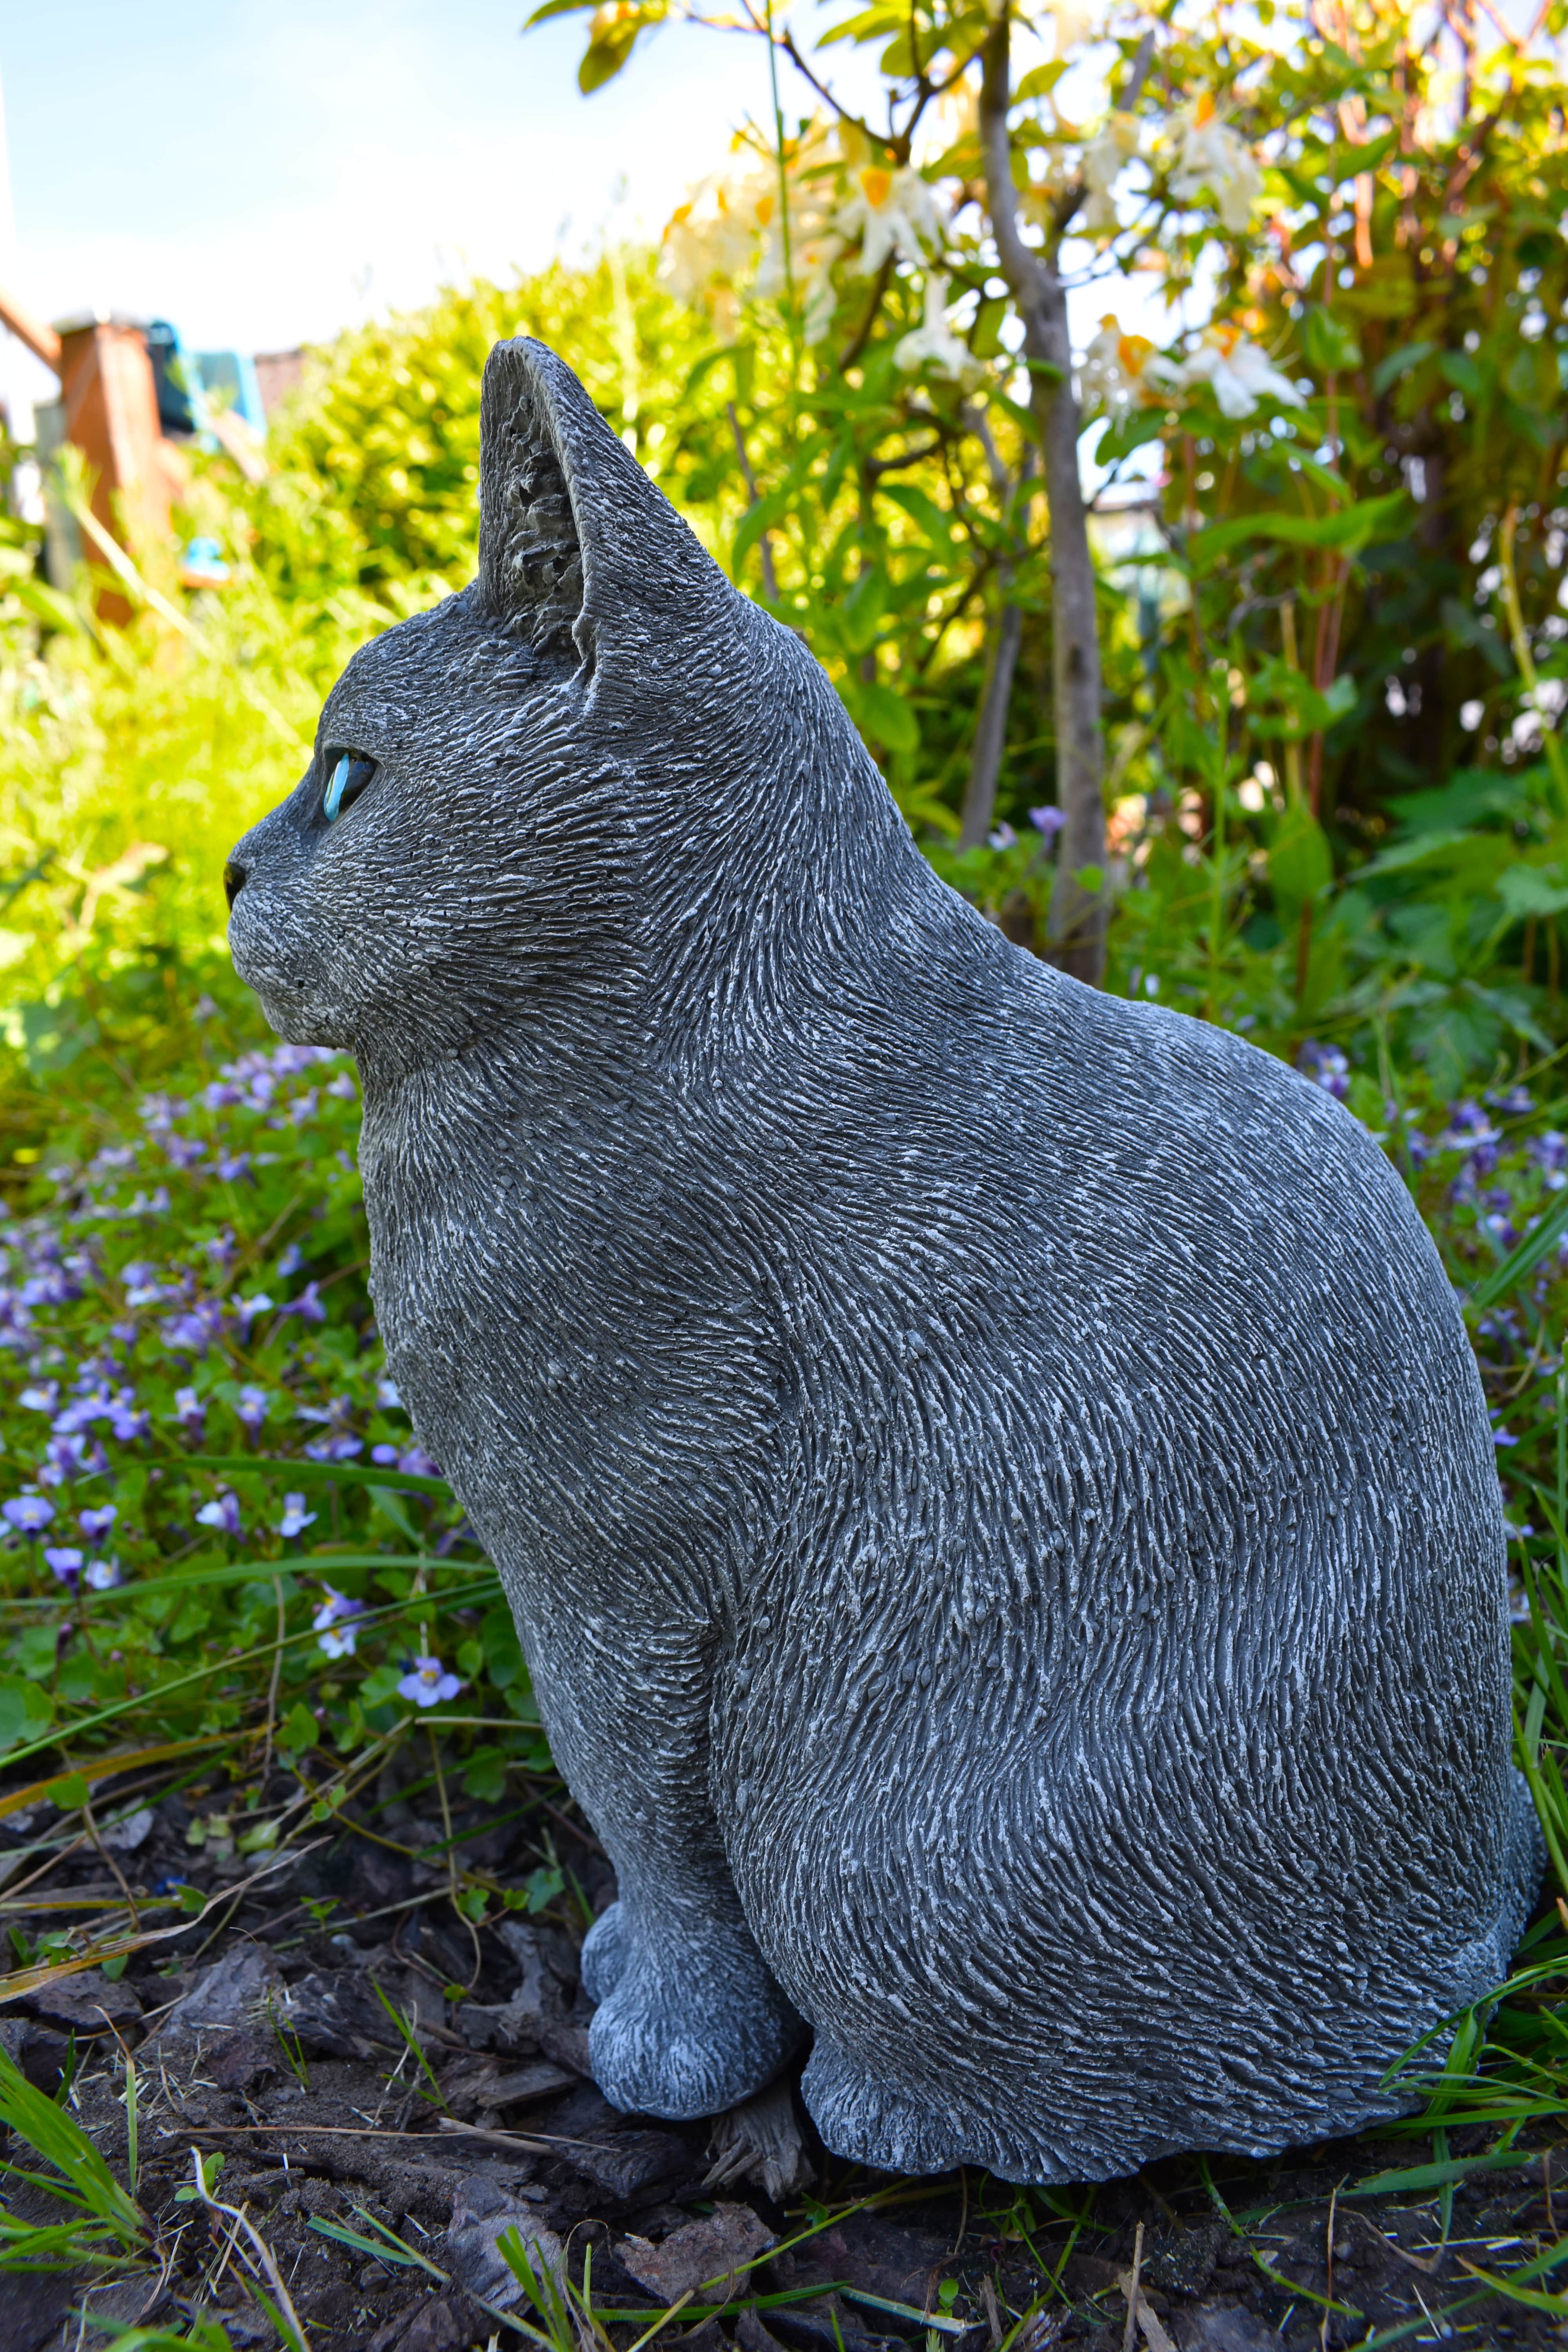 Große Katze - lebensgroß "Russisch Blau"